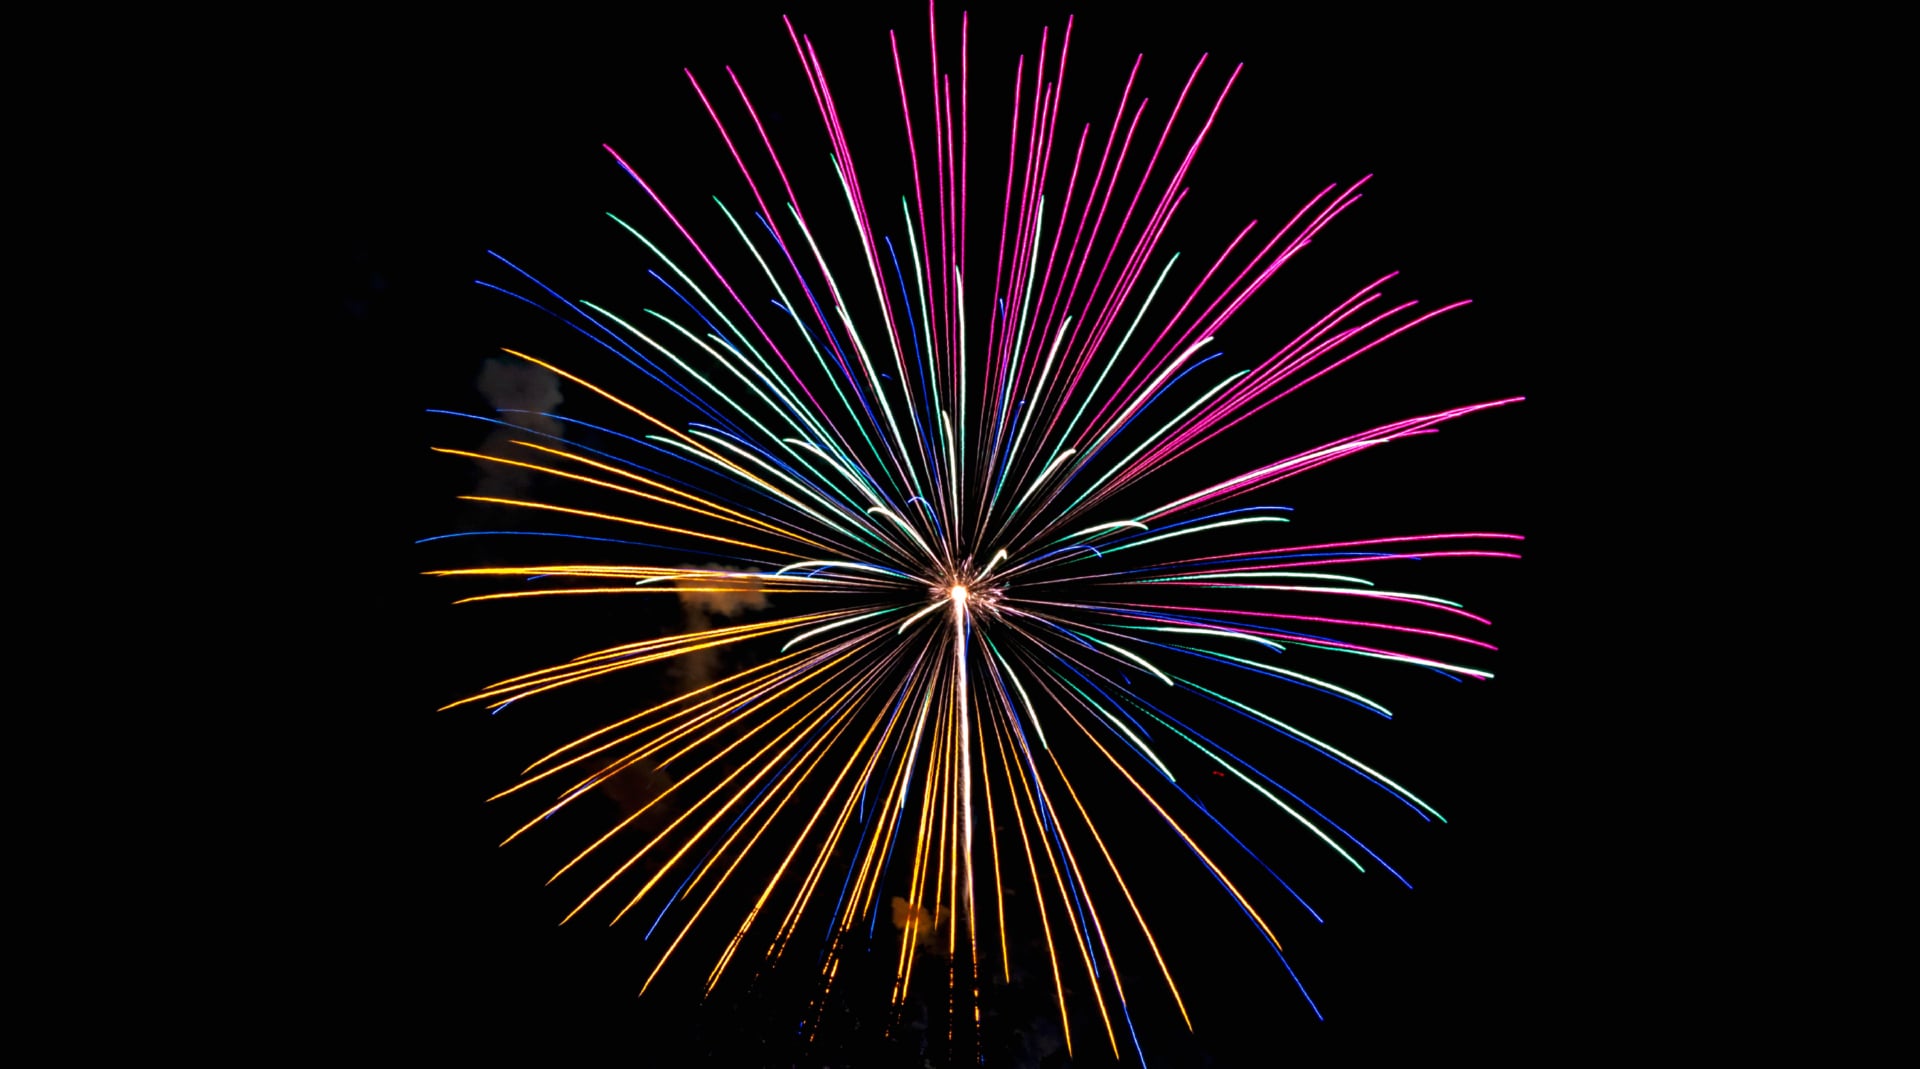 Digital Art Fireworks at 2048 x 2048 iPad size wallpapers HD quality